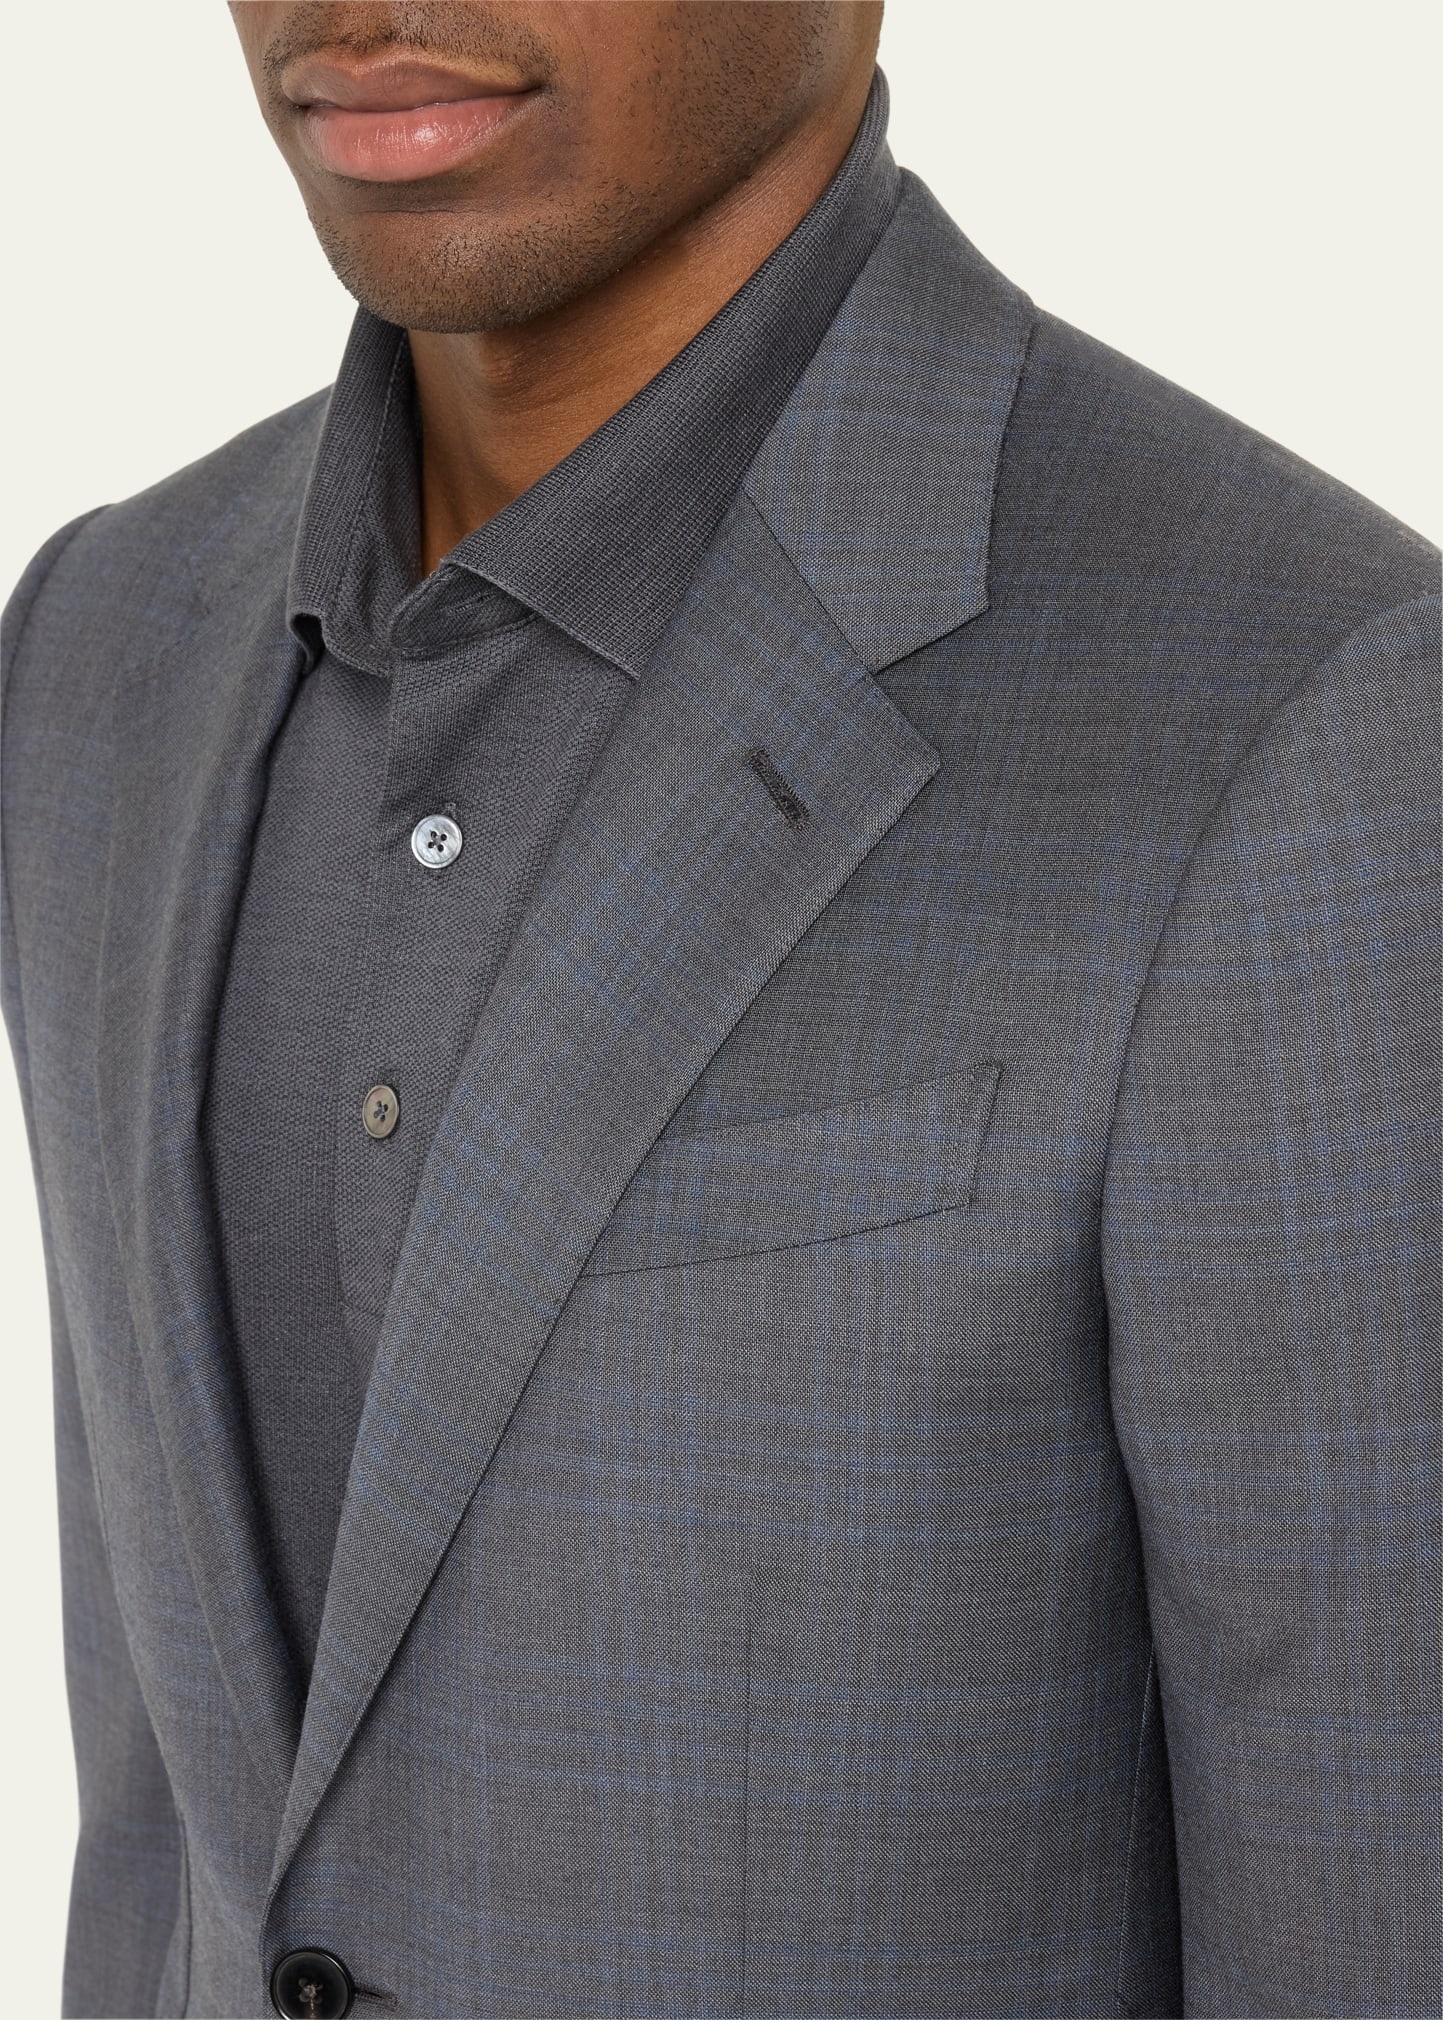 Men's Two-Tone Plaid Wool Suit - 5